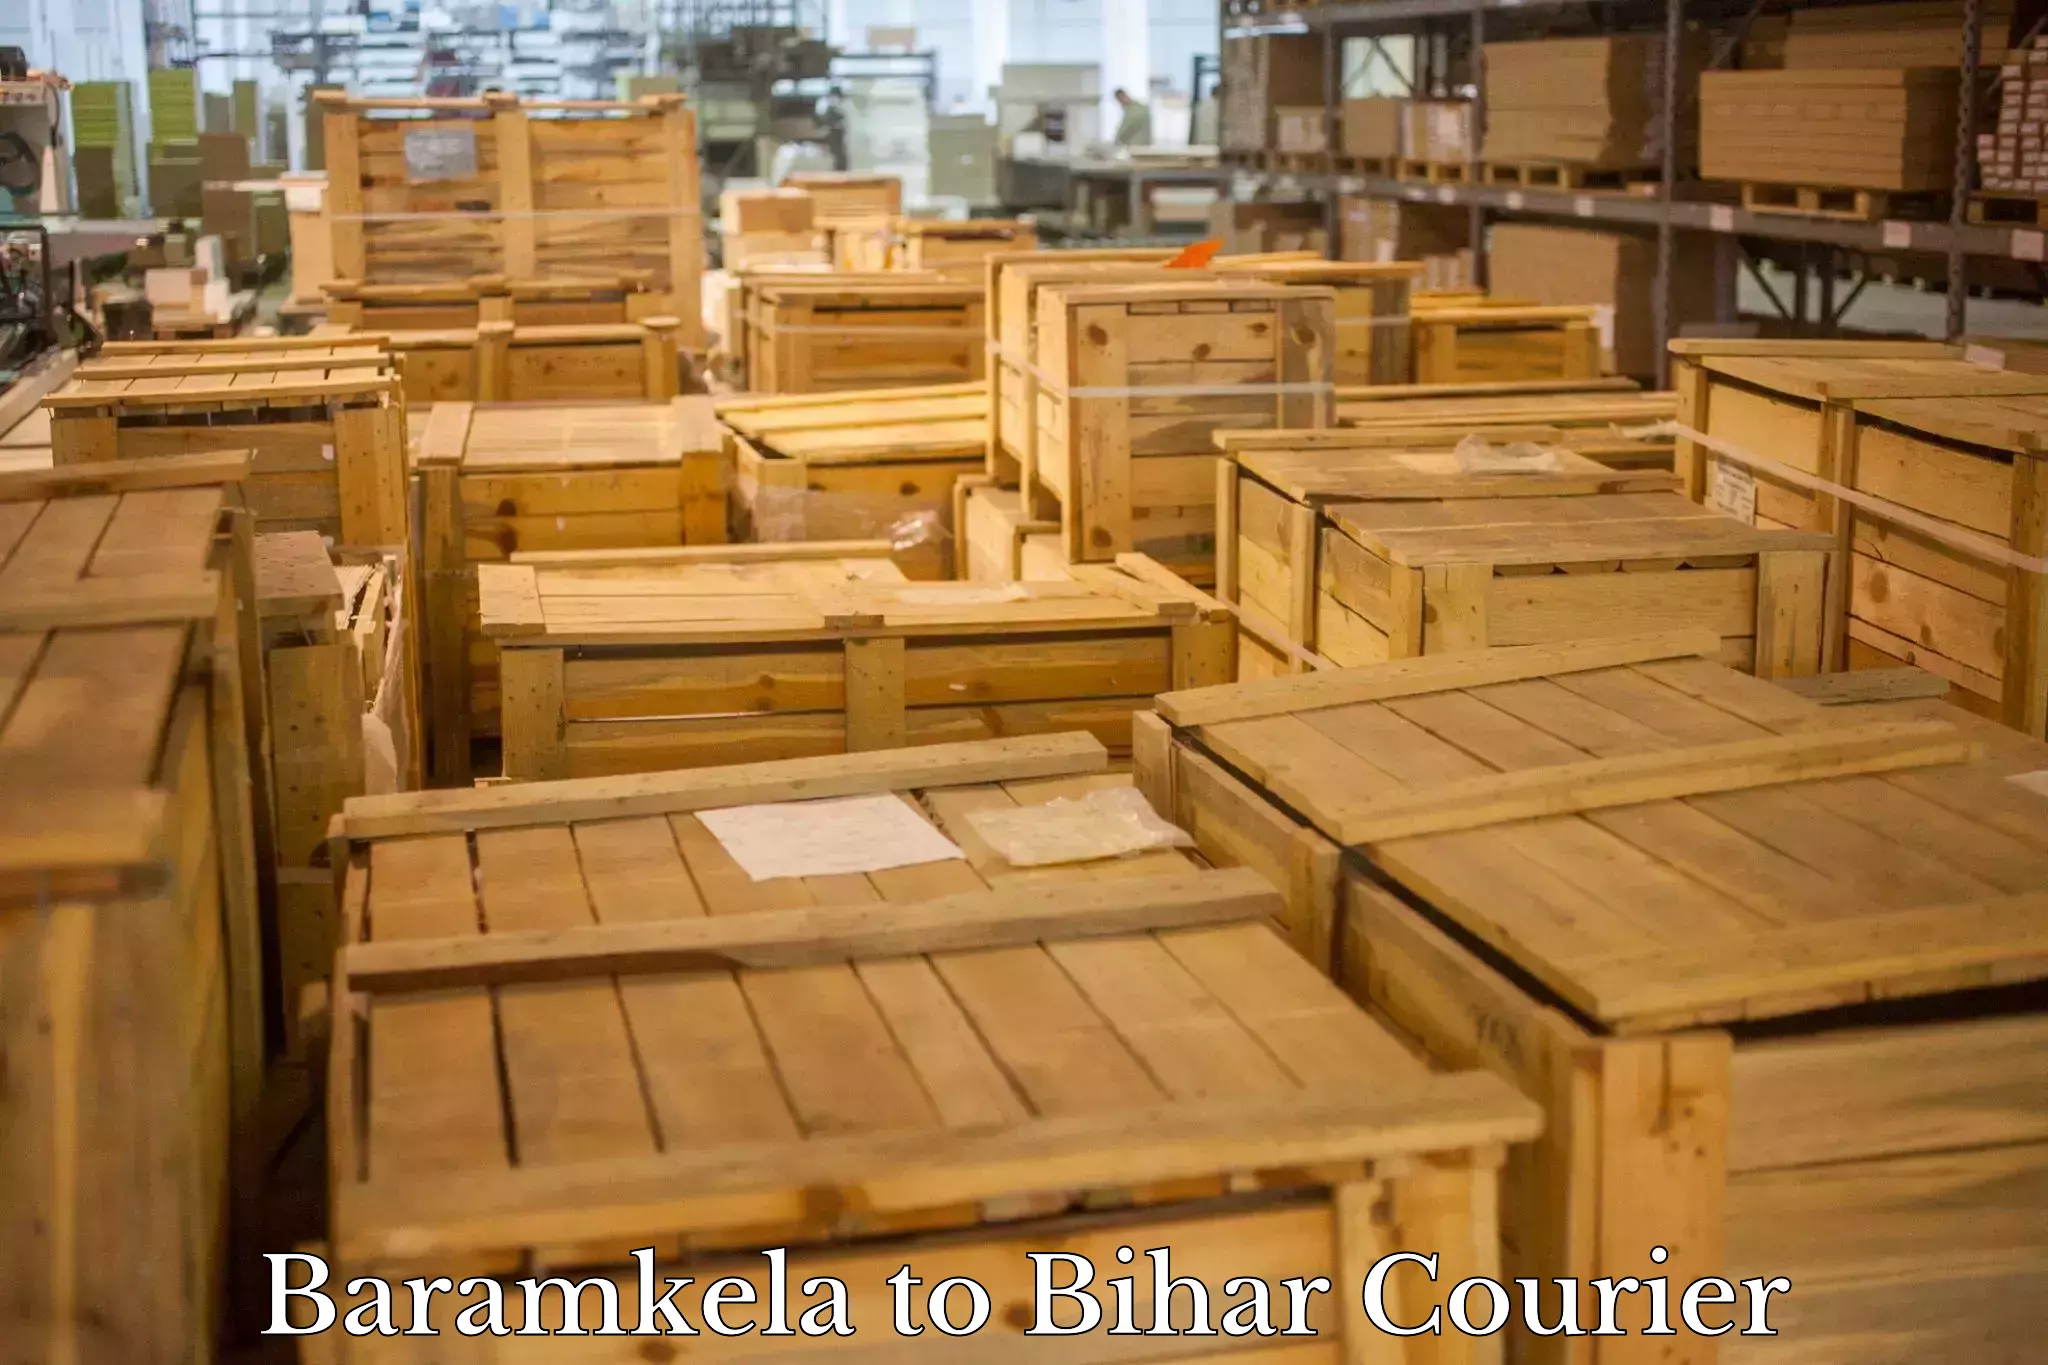 Tech-enabled shipping Baramkela to Dinara